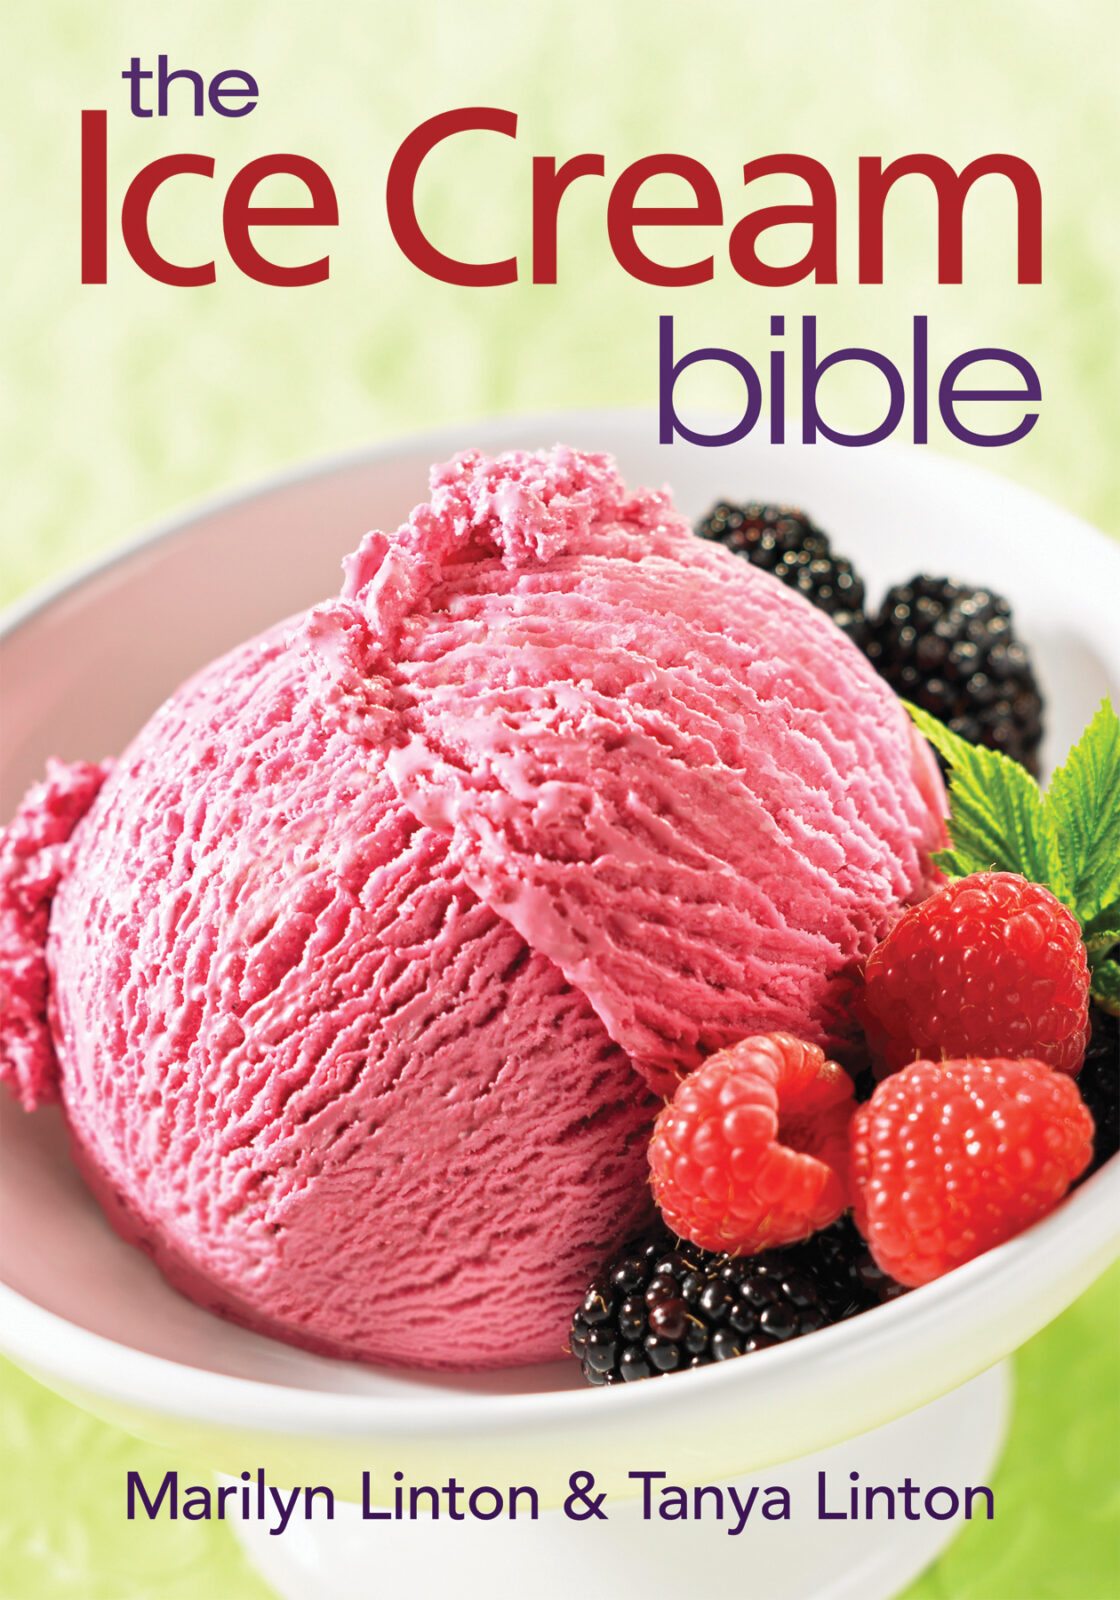 The Ice Cream Bible